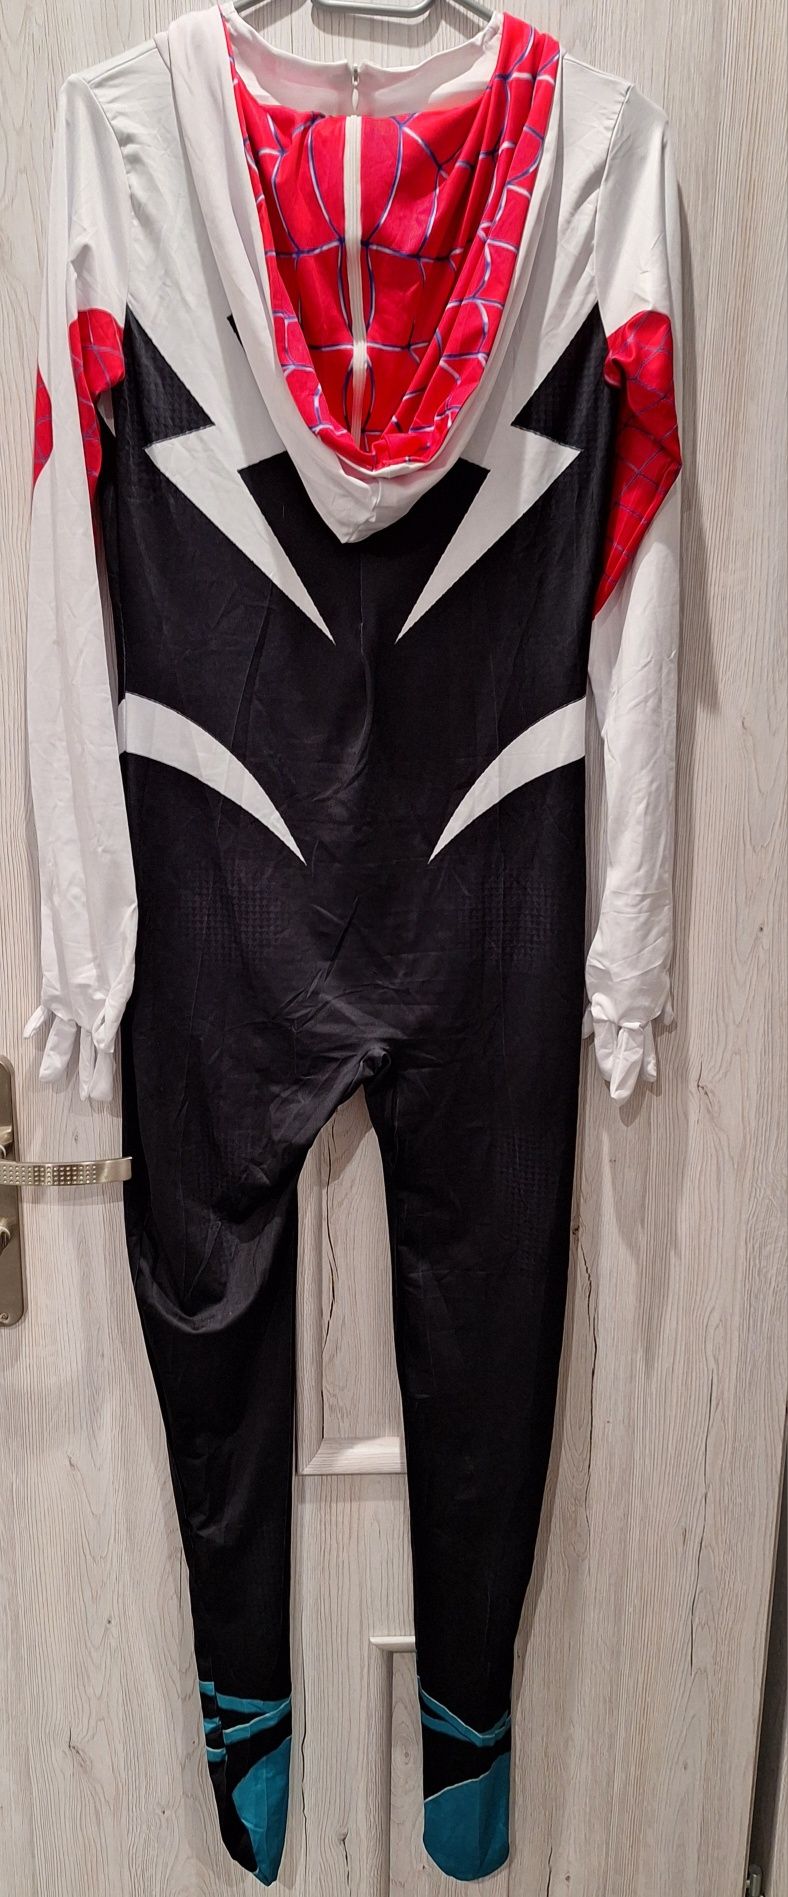 Superbohater kostium strój ghost spider 170cm.